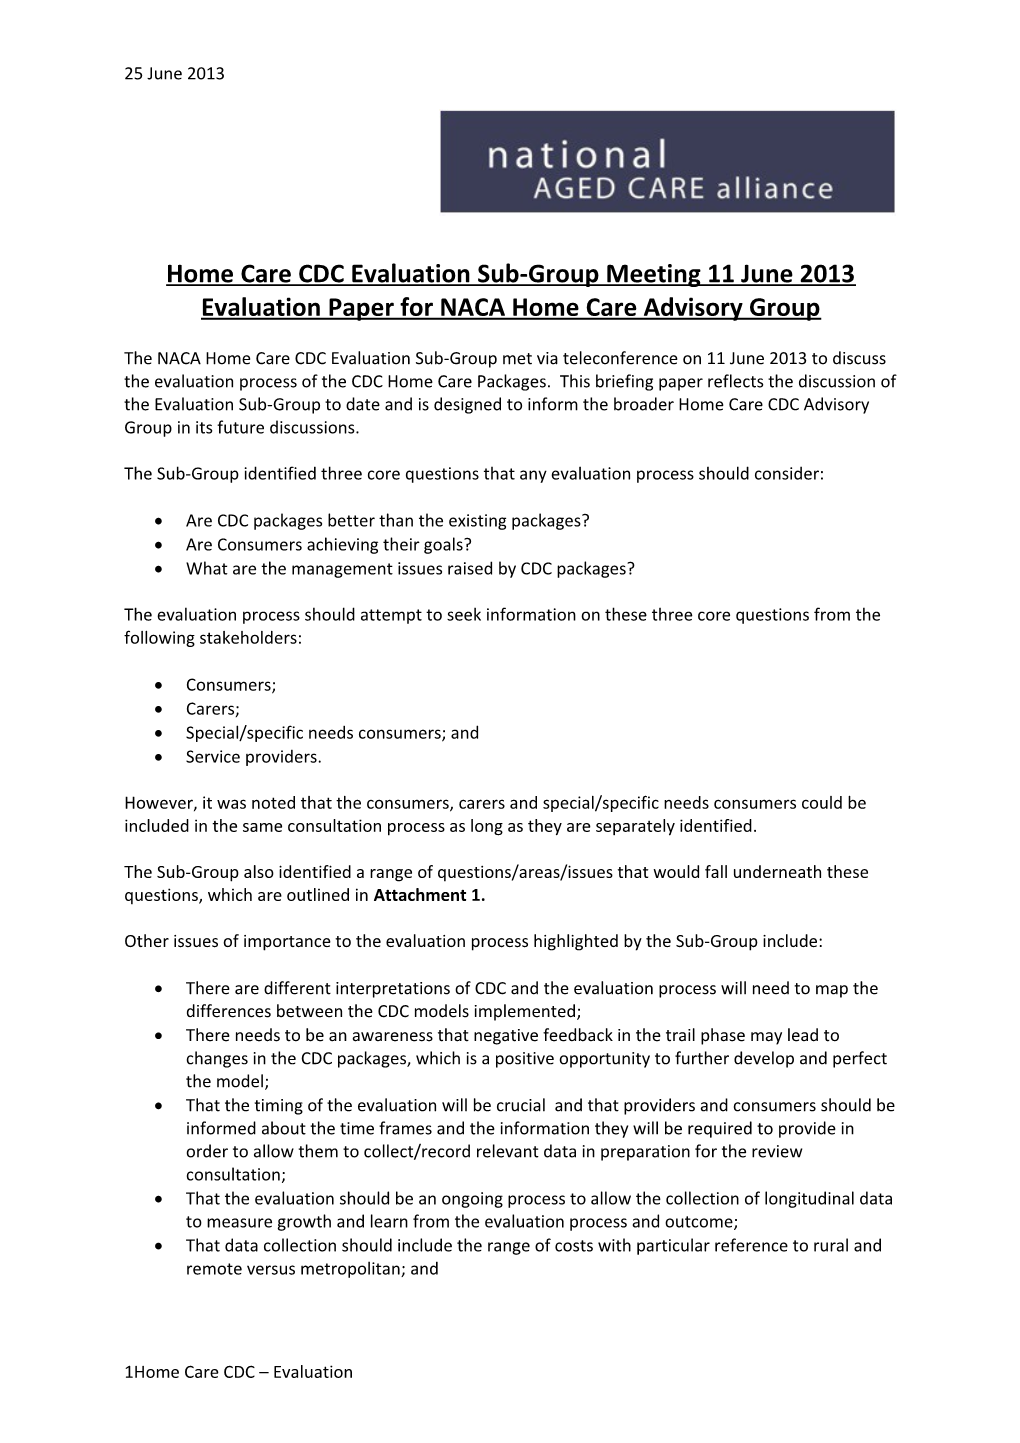 Evaluation Paper for NACA Home Care Advisory Group